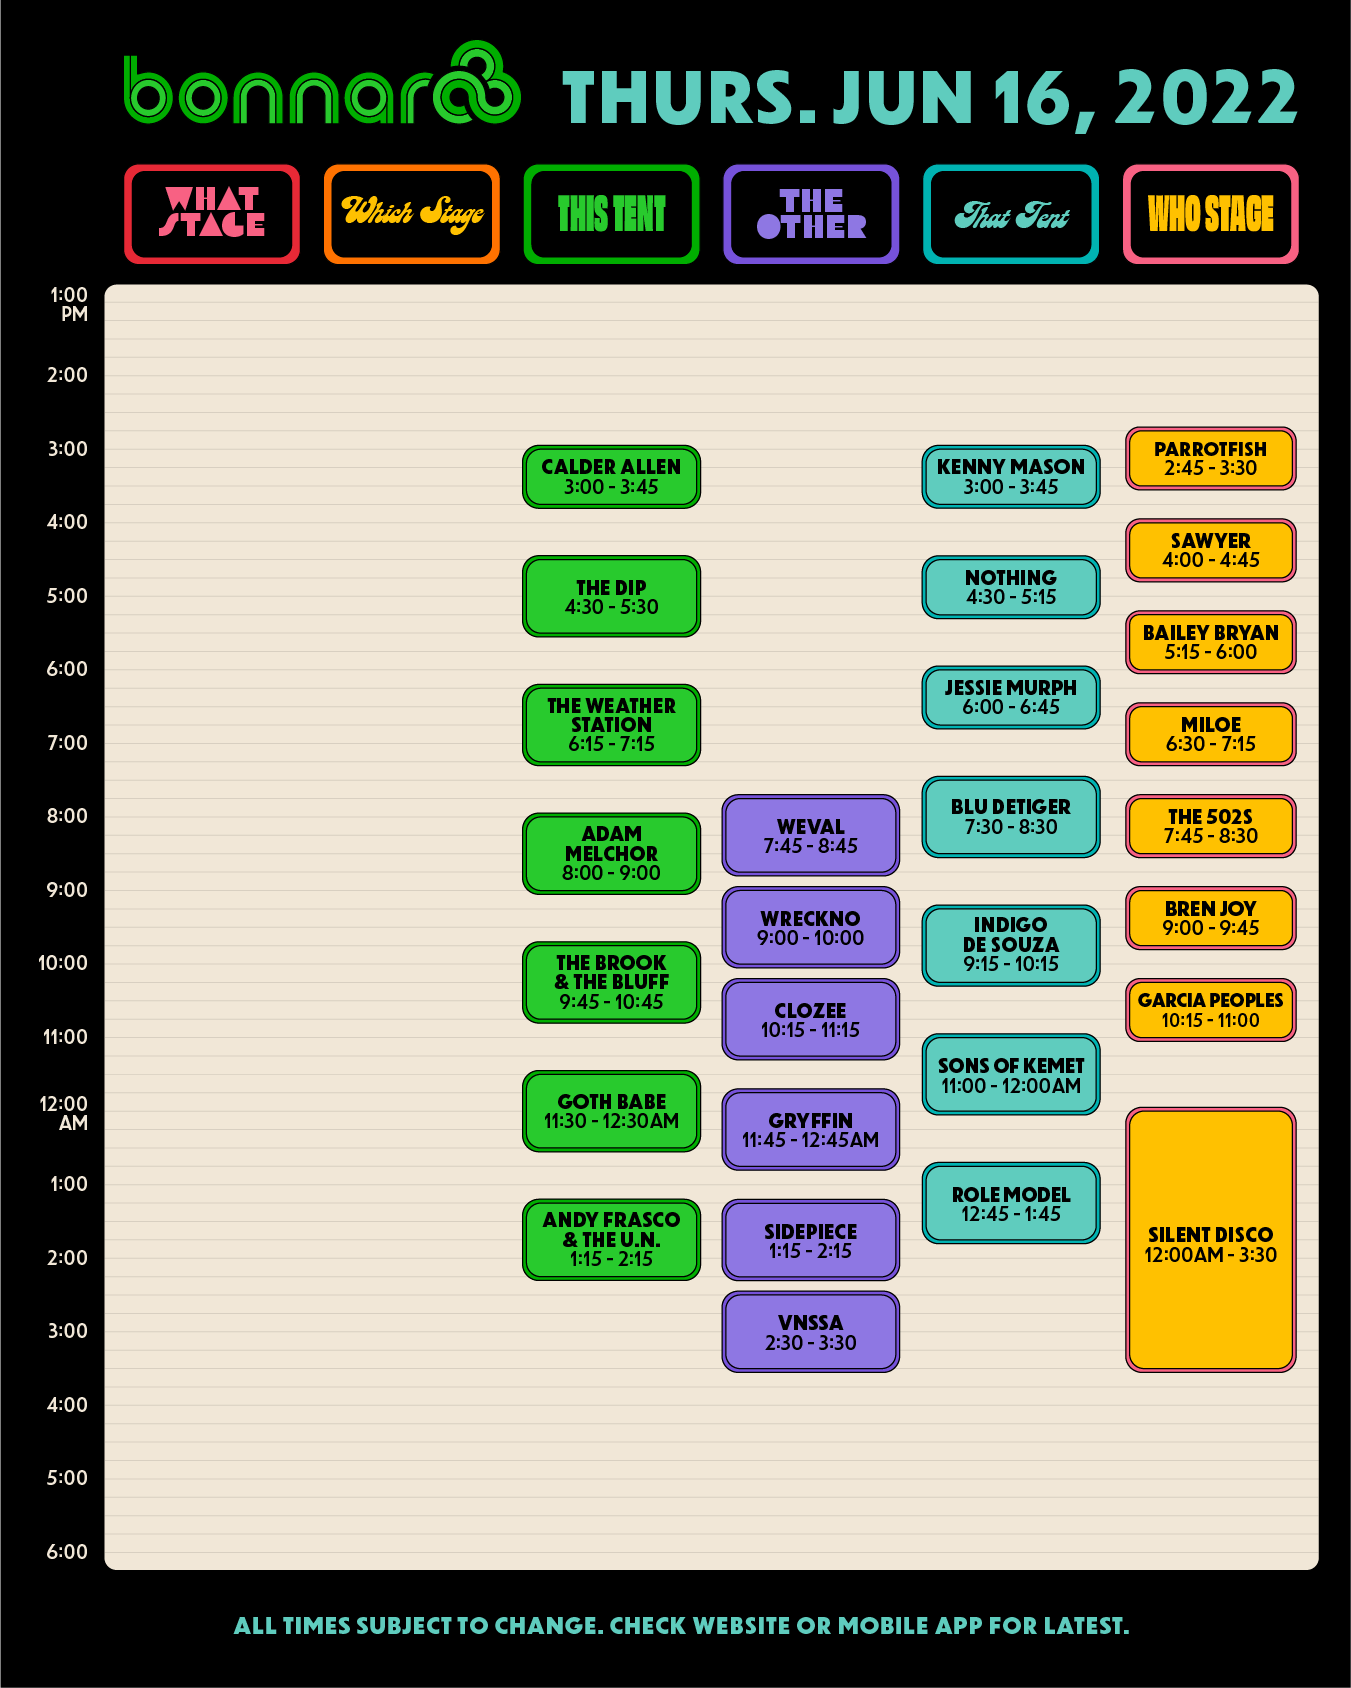 Bonnaroo 2022 schedule